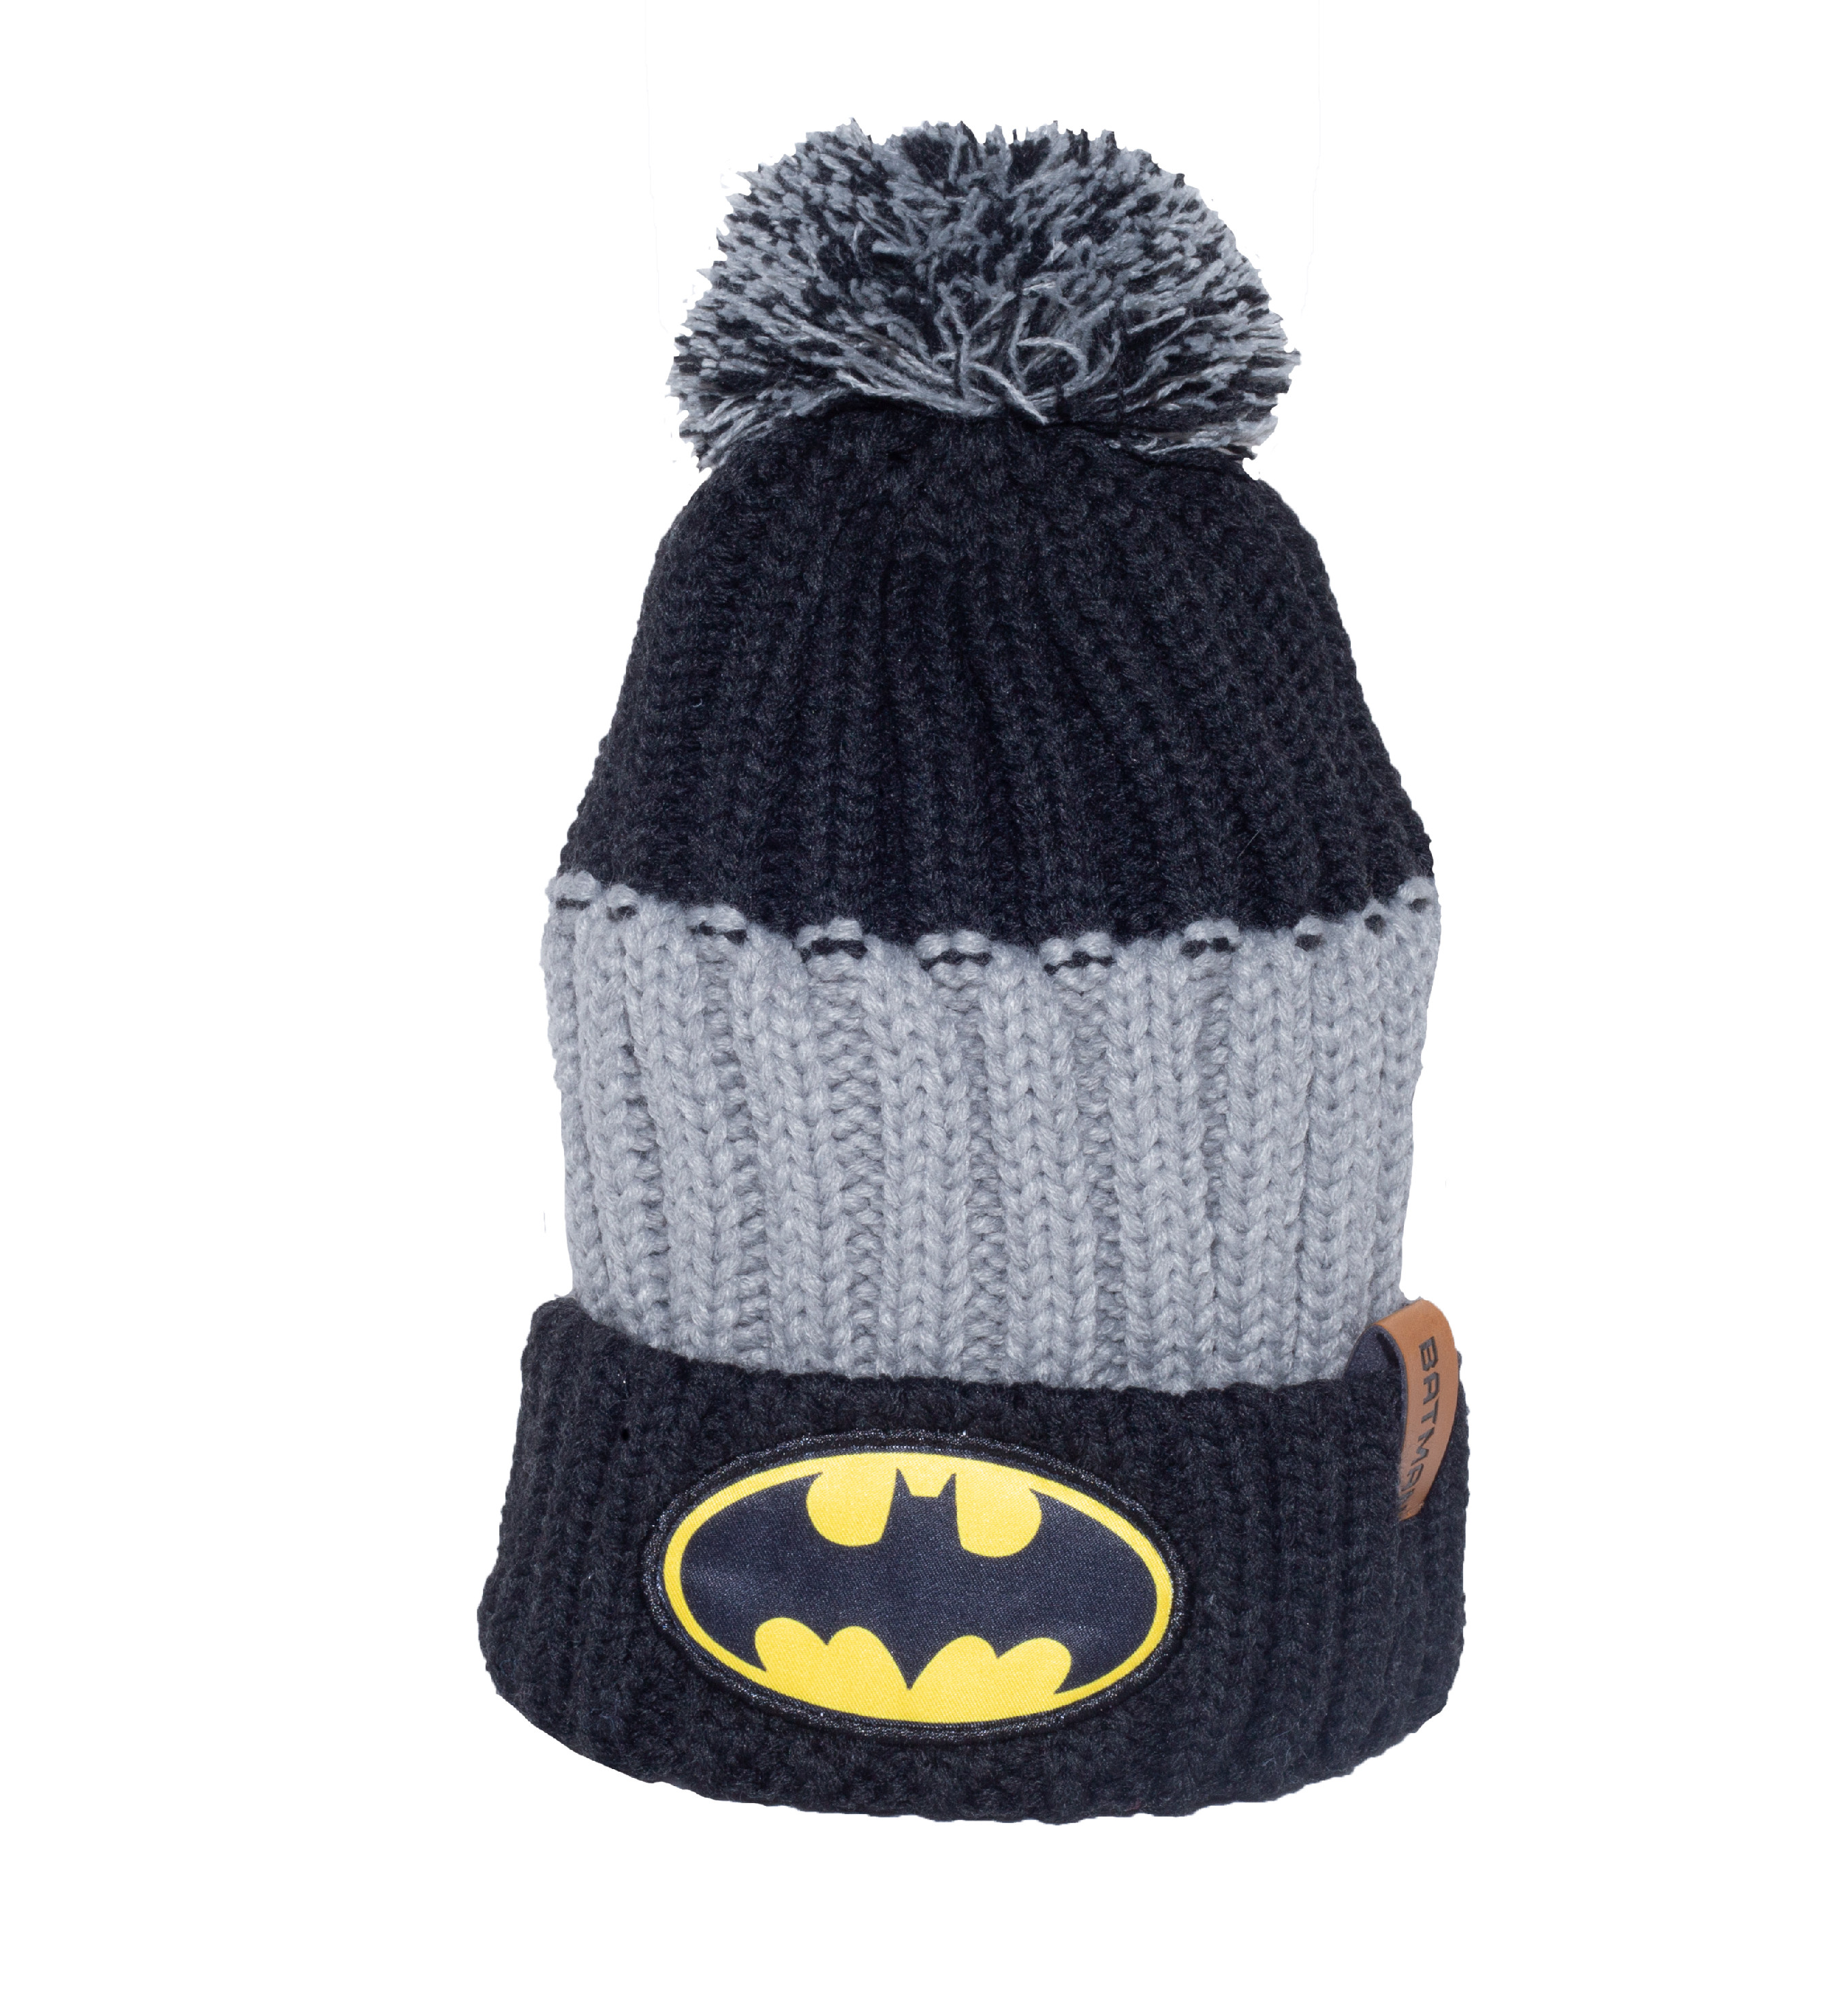 EPlus Chlapecká čepice na zimu - Batman Velikost kšiltovka: 52